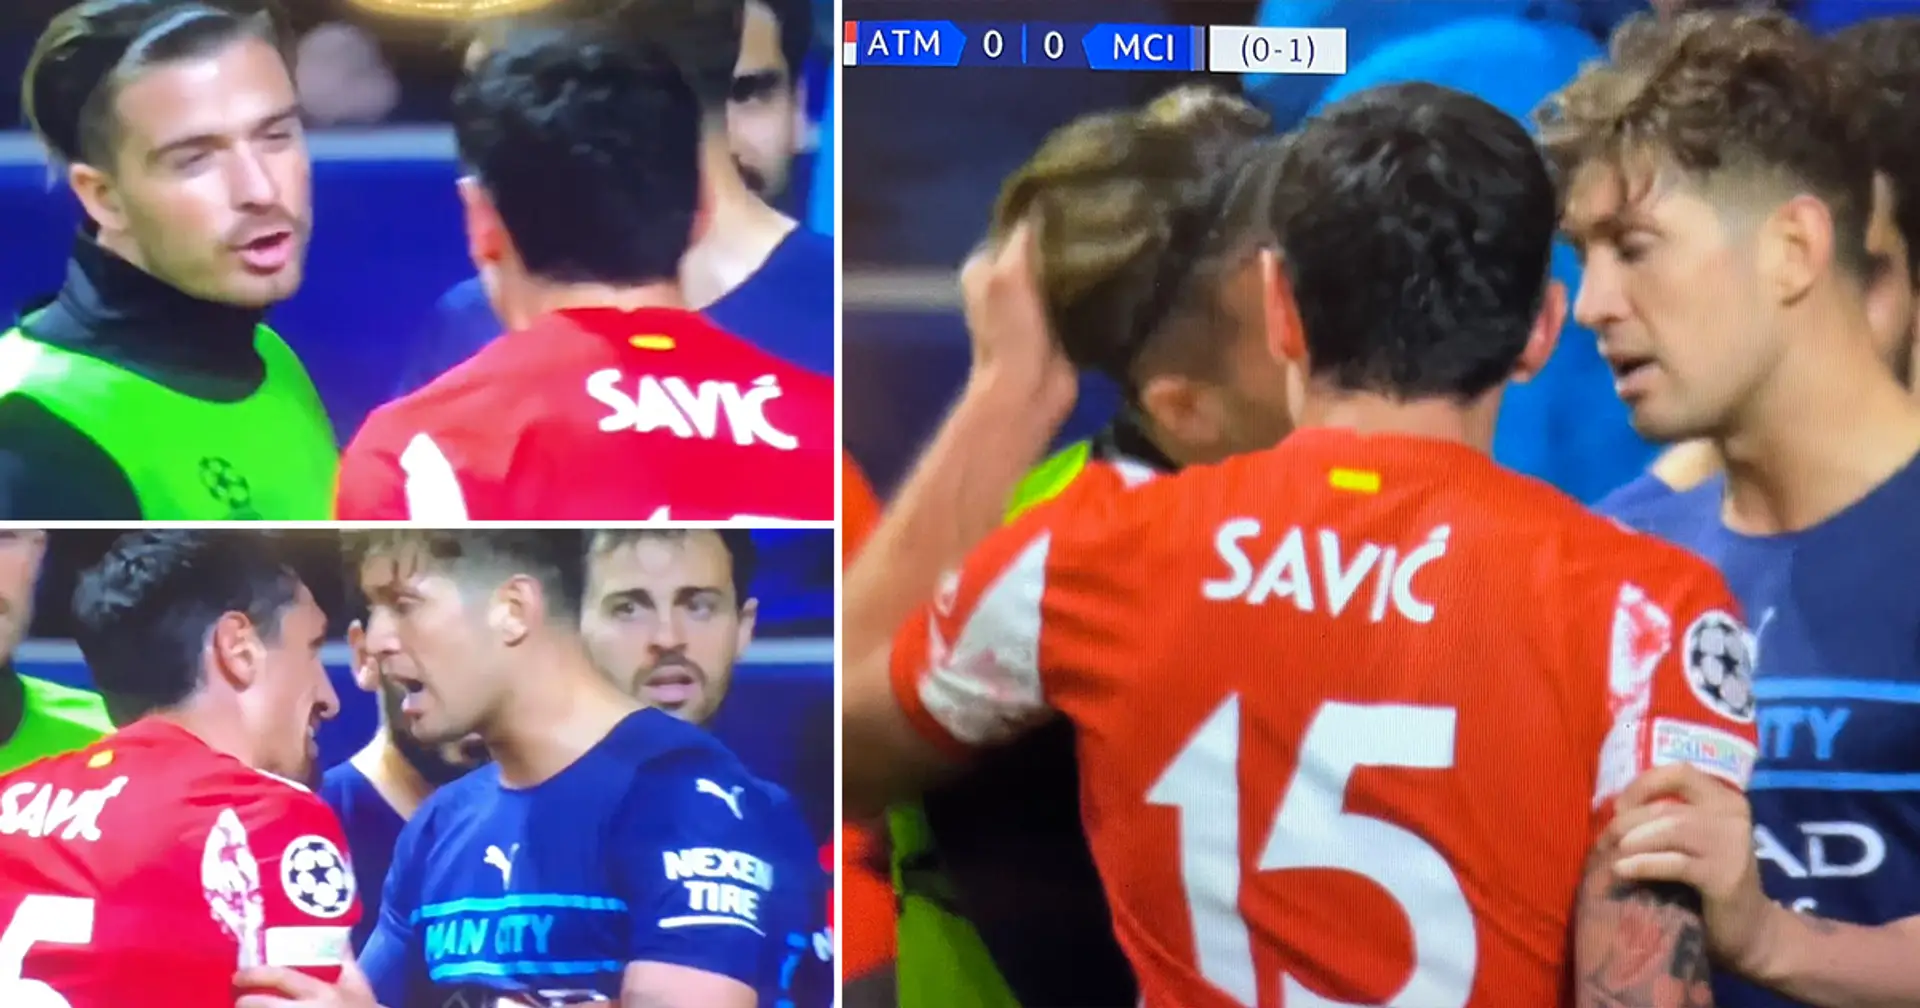 Savic tire grossièrement les cheveux de Grealish pendant le match, les deux s'affrontent encore dans le tunnel, la police solicitée